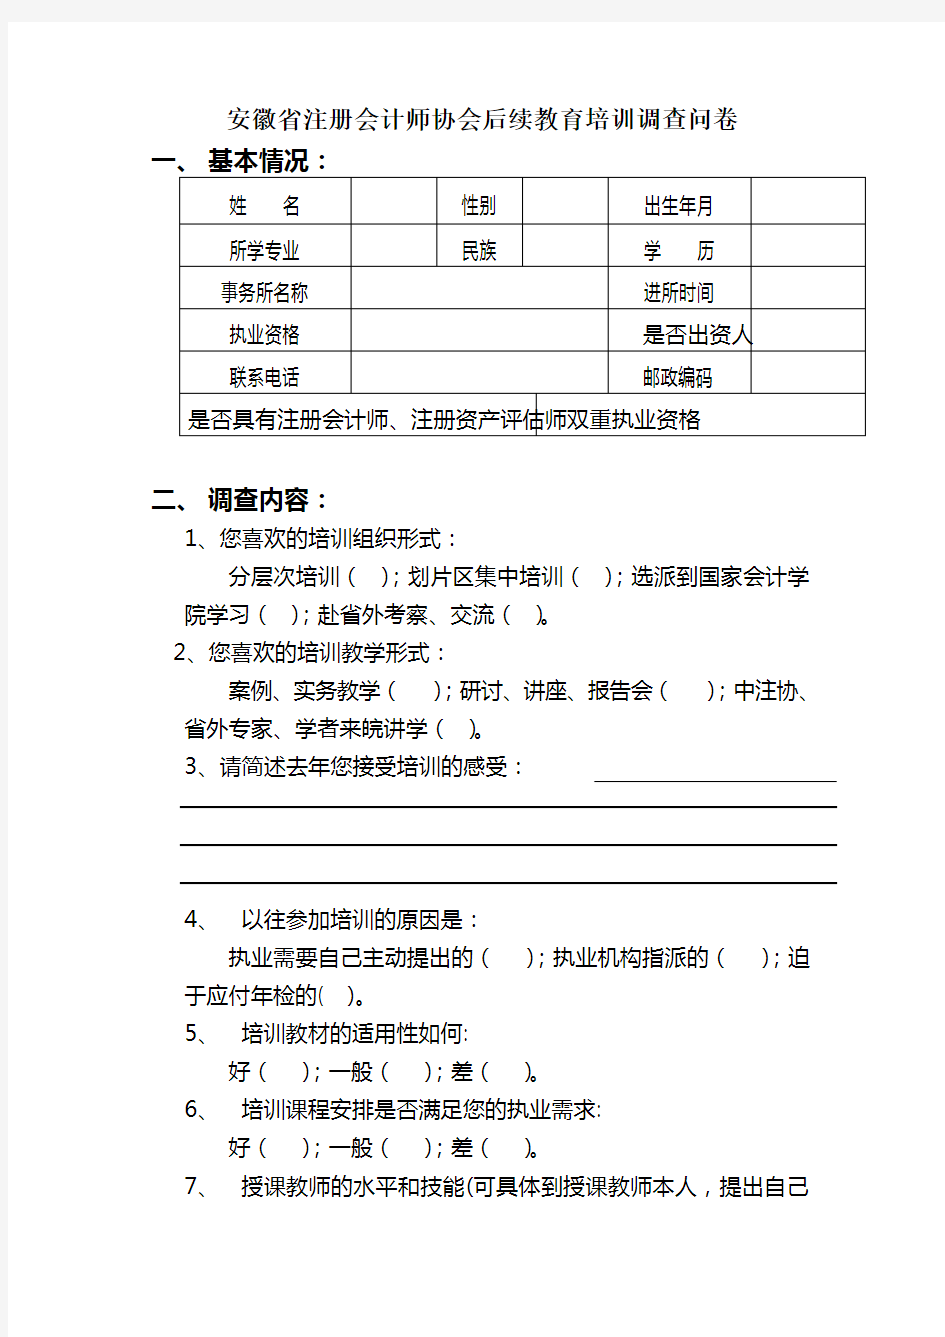 安徽省注册会计师协会后续教育培训调查问卷